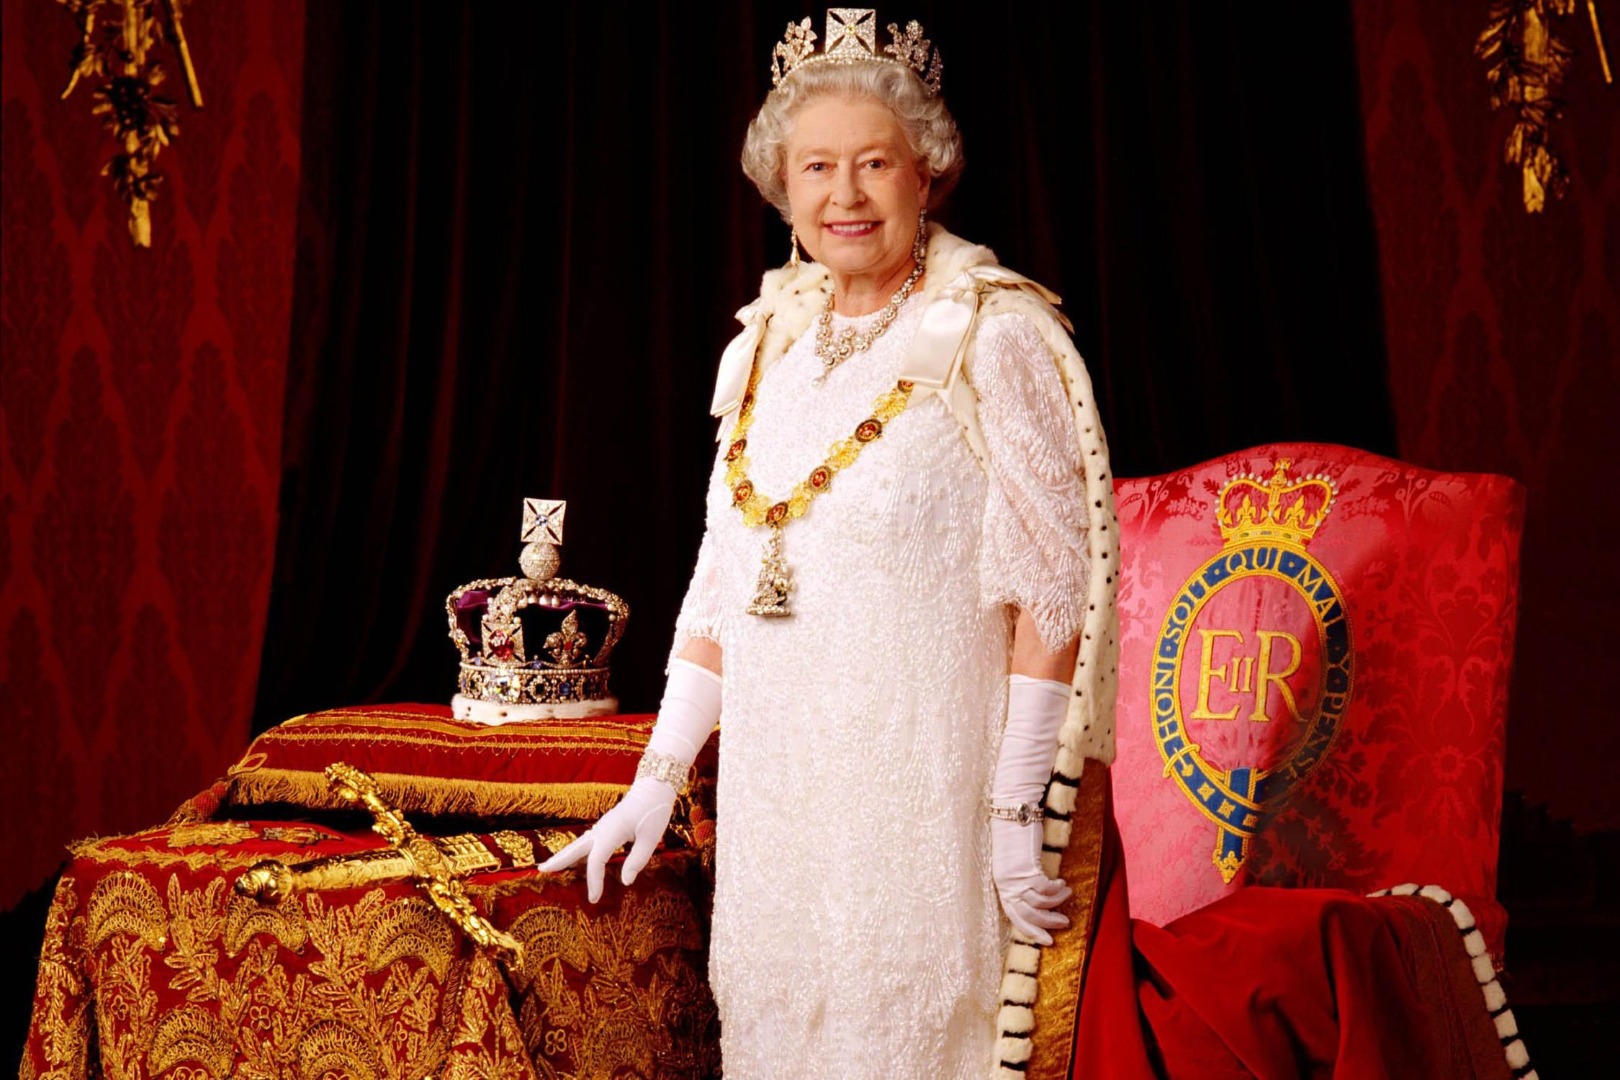 Kraliçe Elizabeth’in ölüm tarihini bilen hesap Kral Charles için de tarih verdi 52